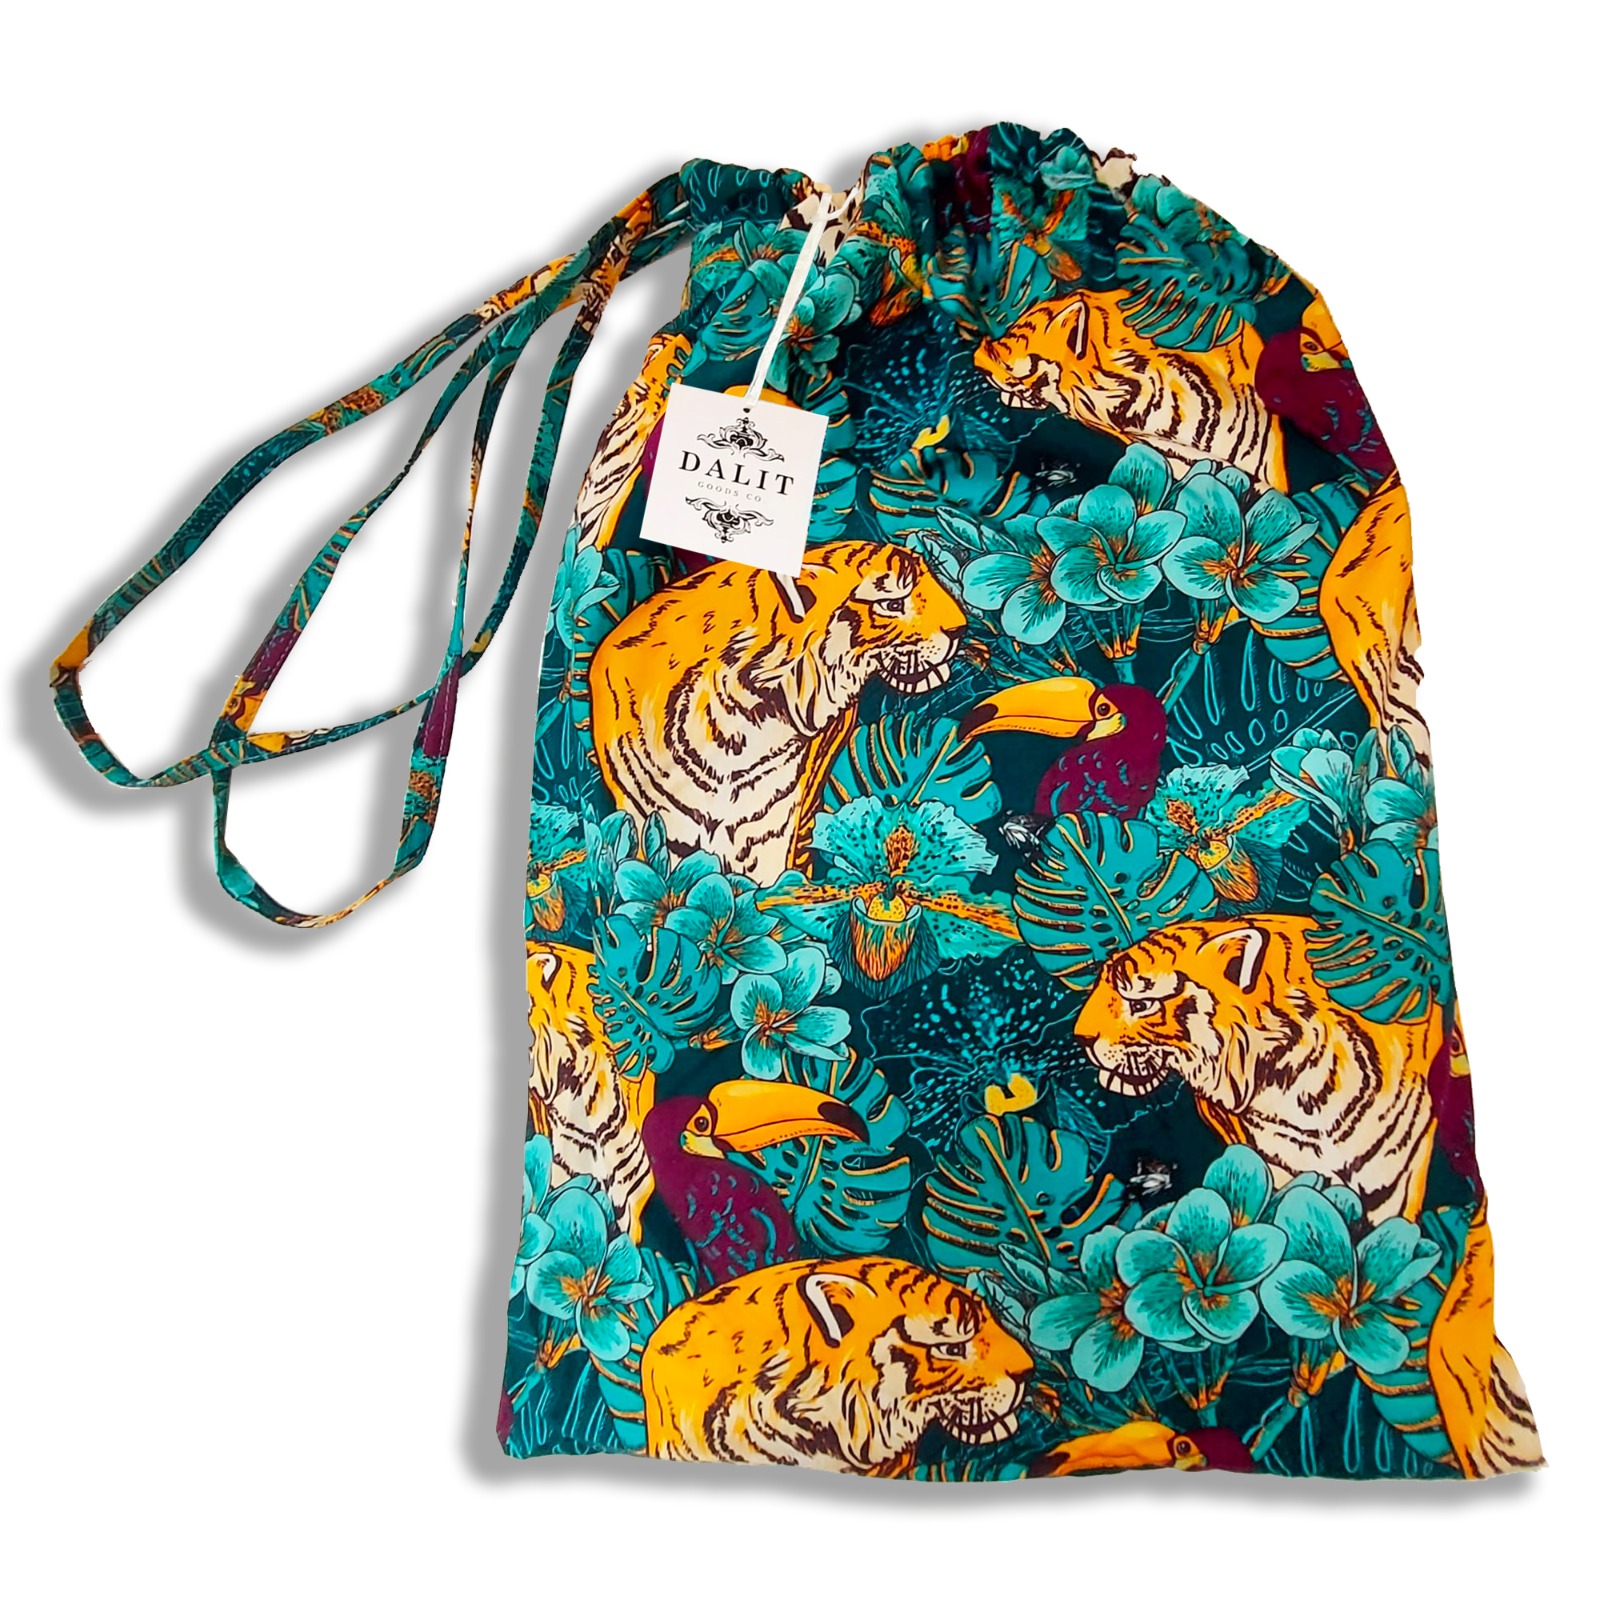 Tiger set in bag